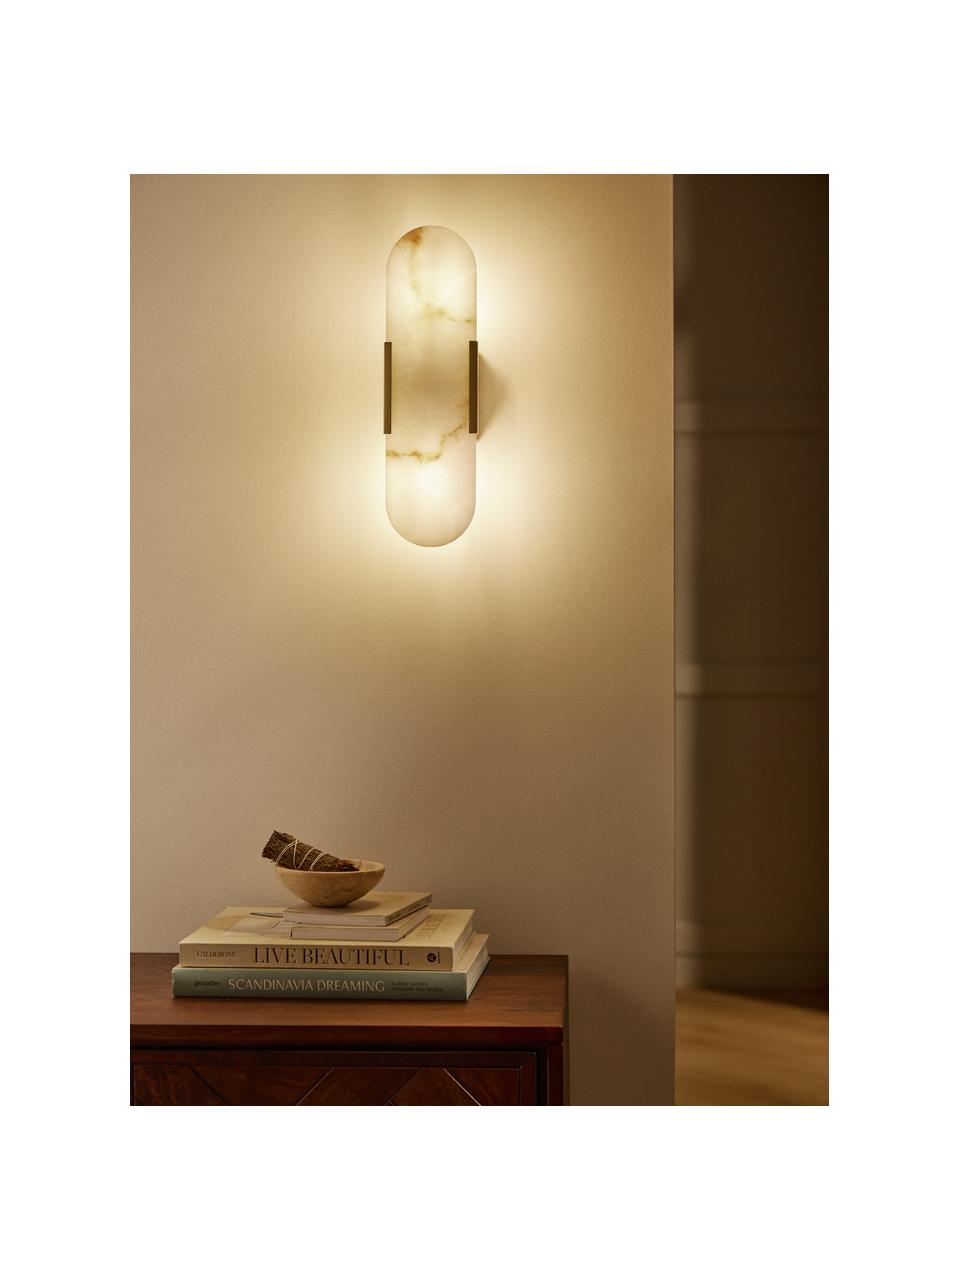 Wandlamp Galene in marmerlook, Lampenkap: kunsthars, Goudkleurig, marmer look wit, B 10 x H 35 cm